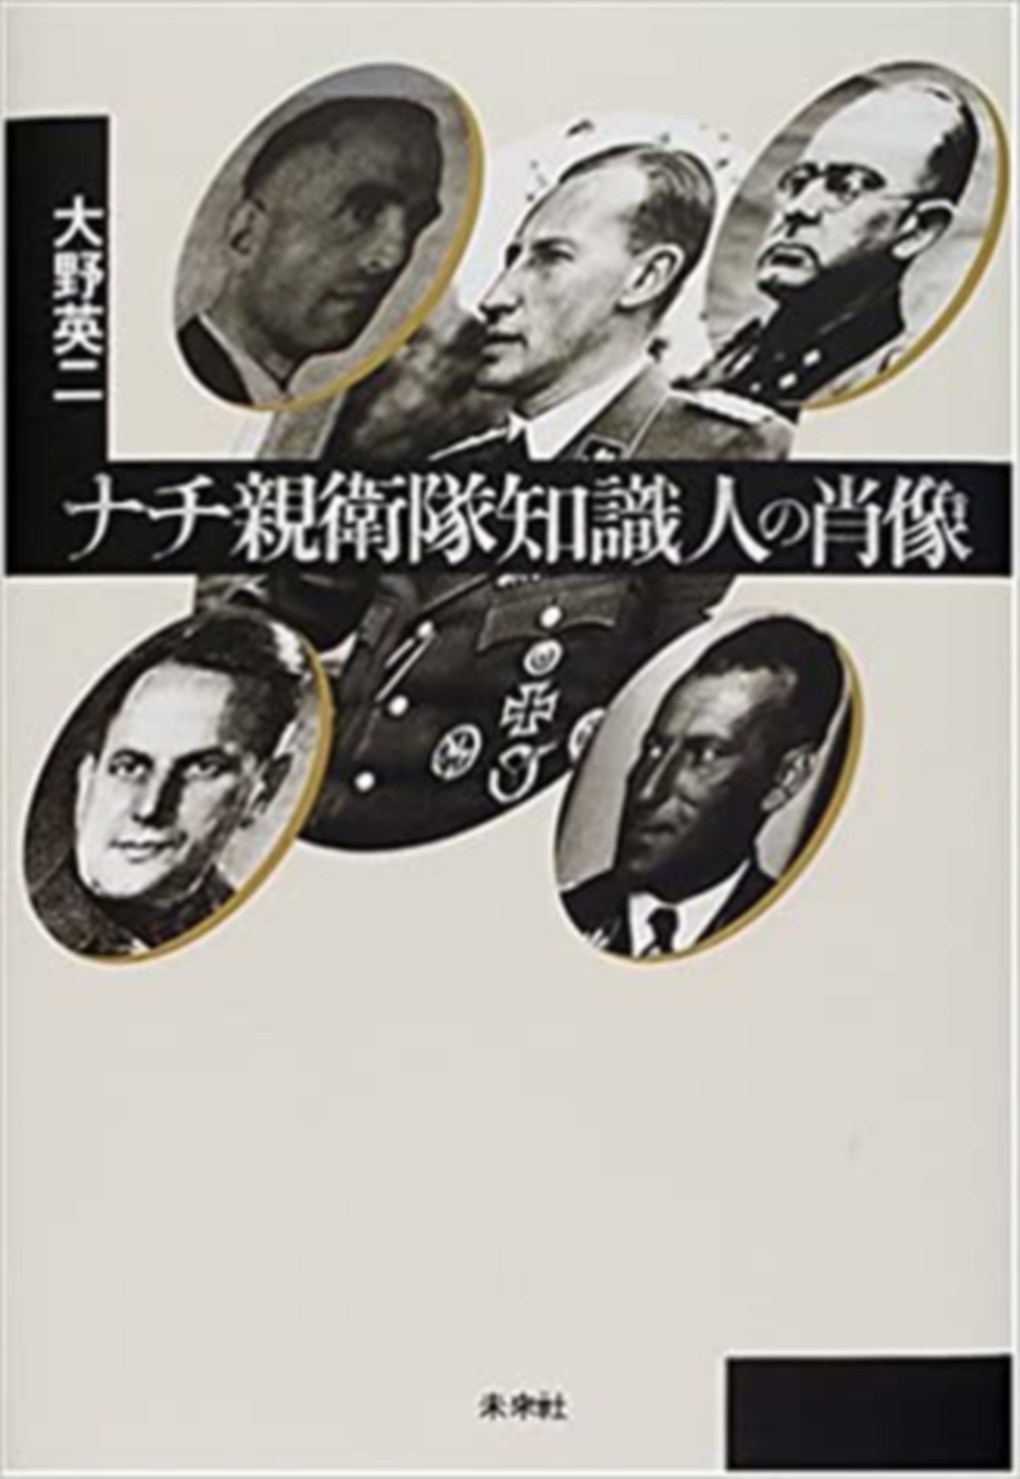 ナチ親衛隊知識人の肖像の商品画像